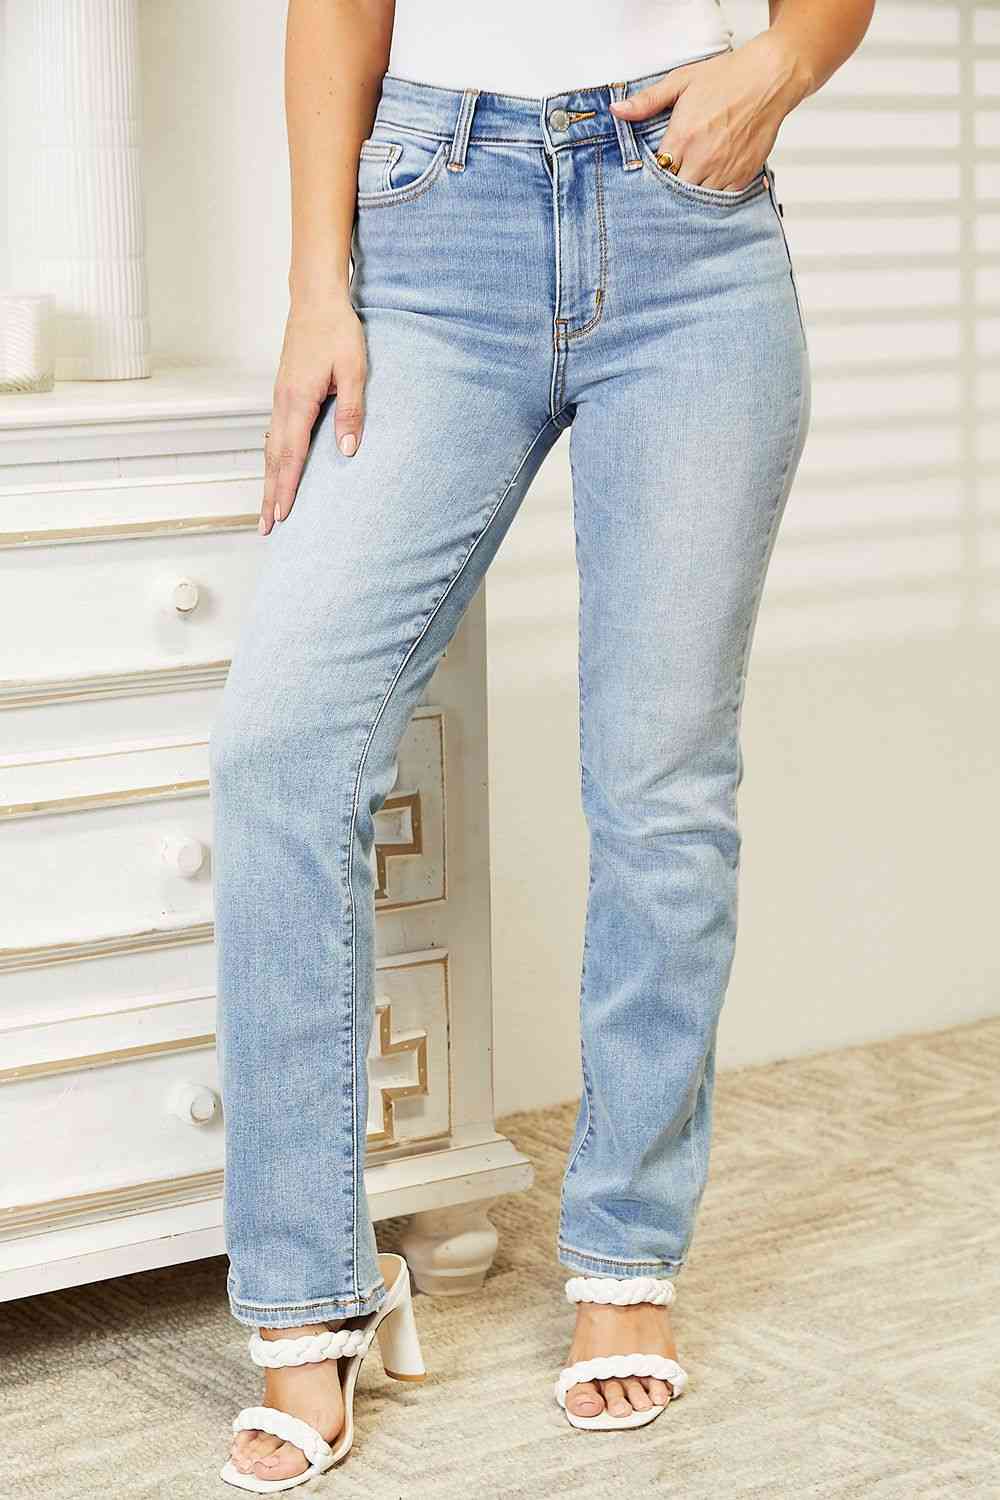 Judy Blue High Waist Jeans